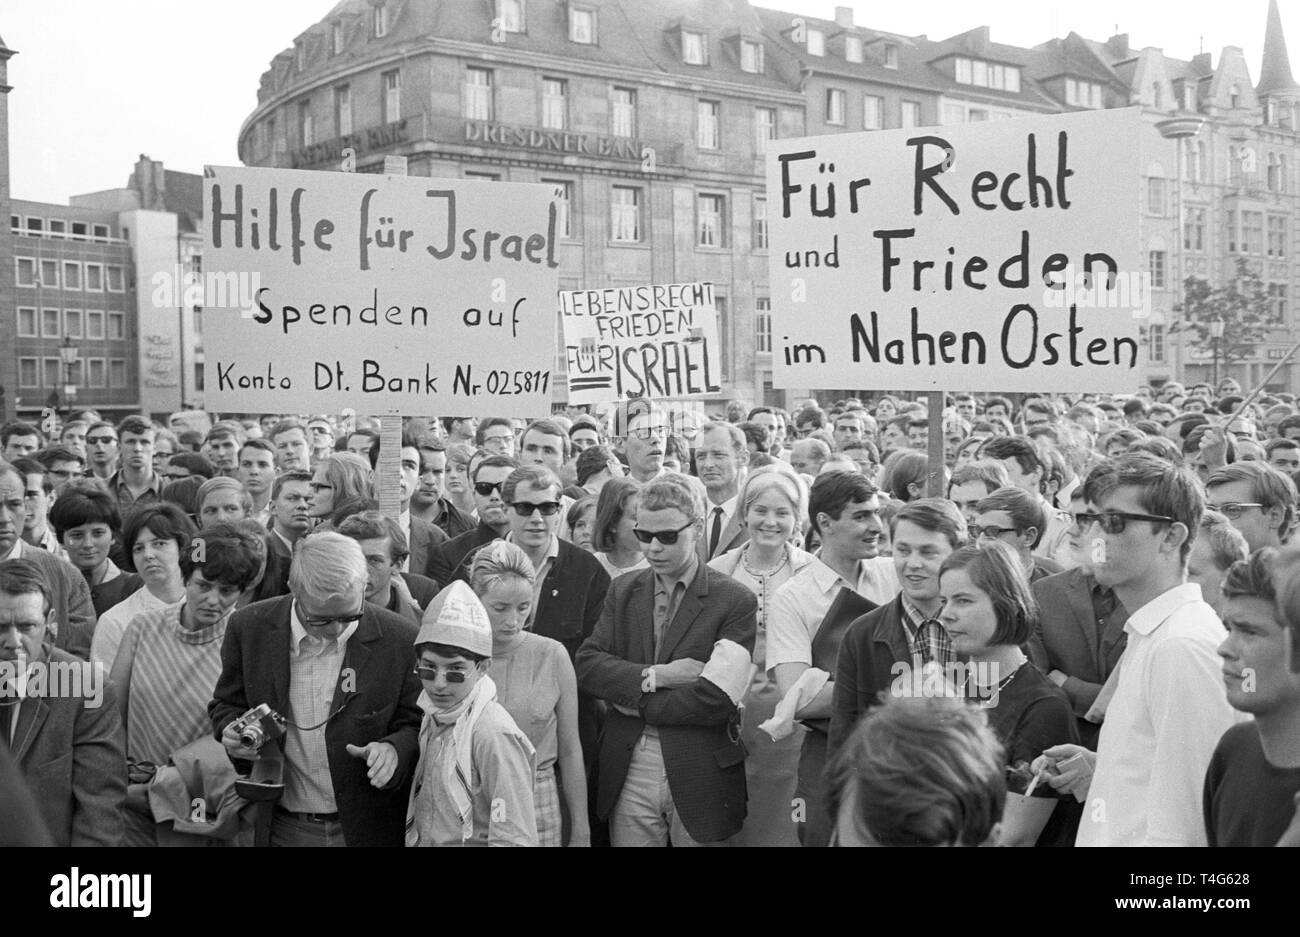 L'AStA de Bonn, le Comité des étudiants en général, organise une action de protestation pour Israël le 06 juin 1968. Ils présentent des banderoles disant "pour la justice et la paix au Moyen-Orient". Dans le monde d'utilisation | Banque D'Images